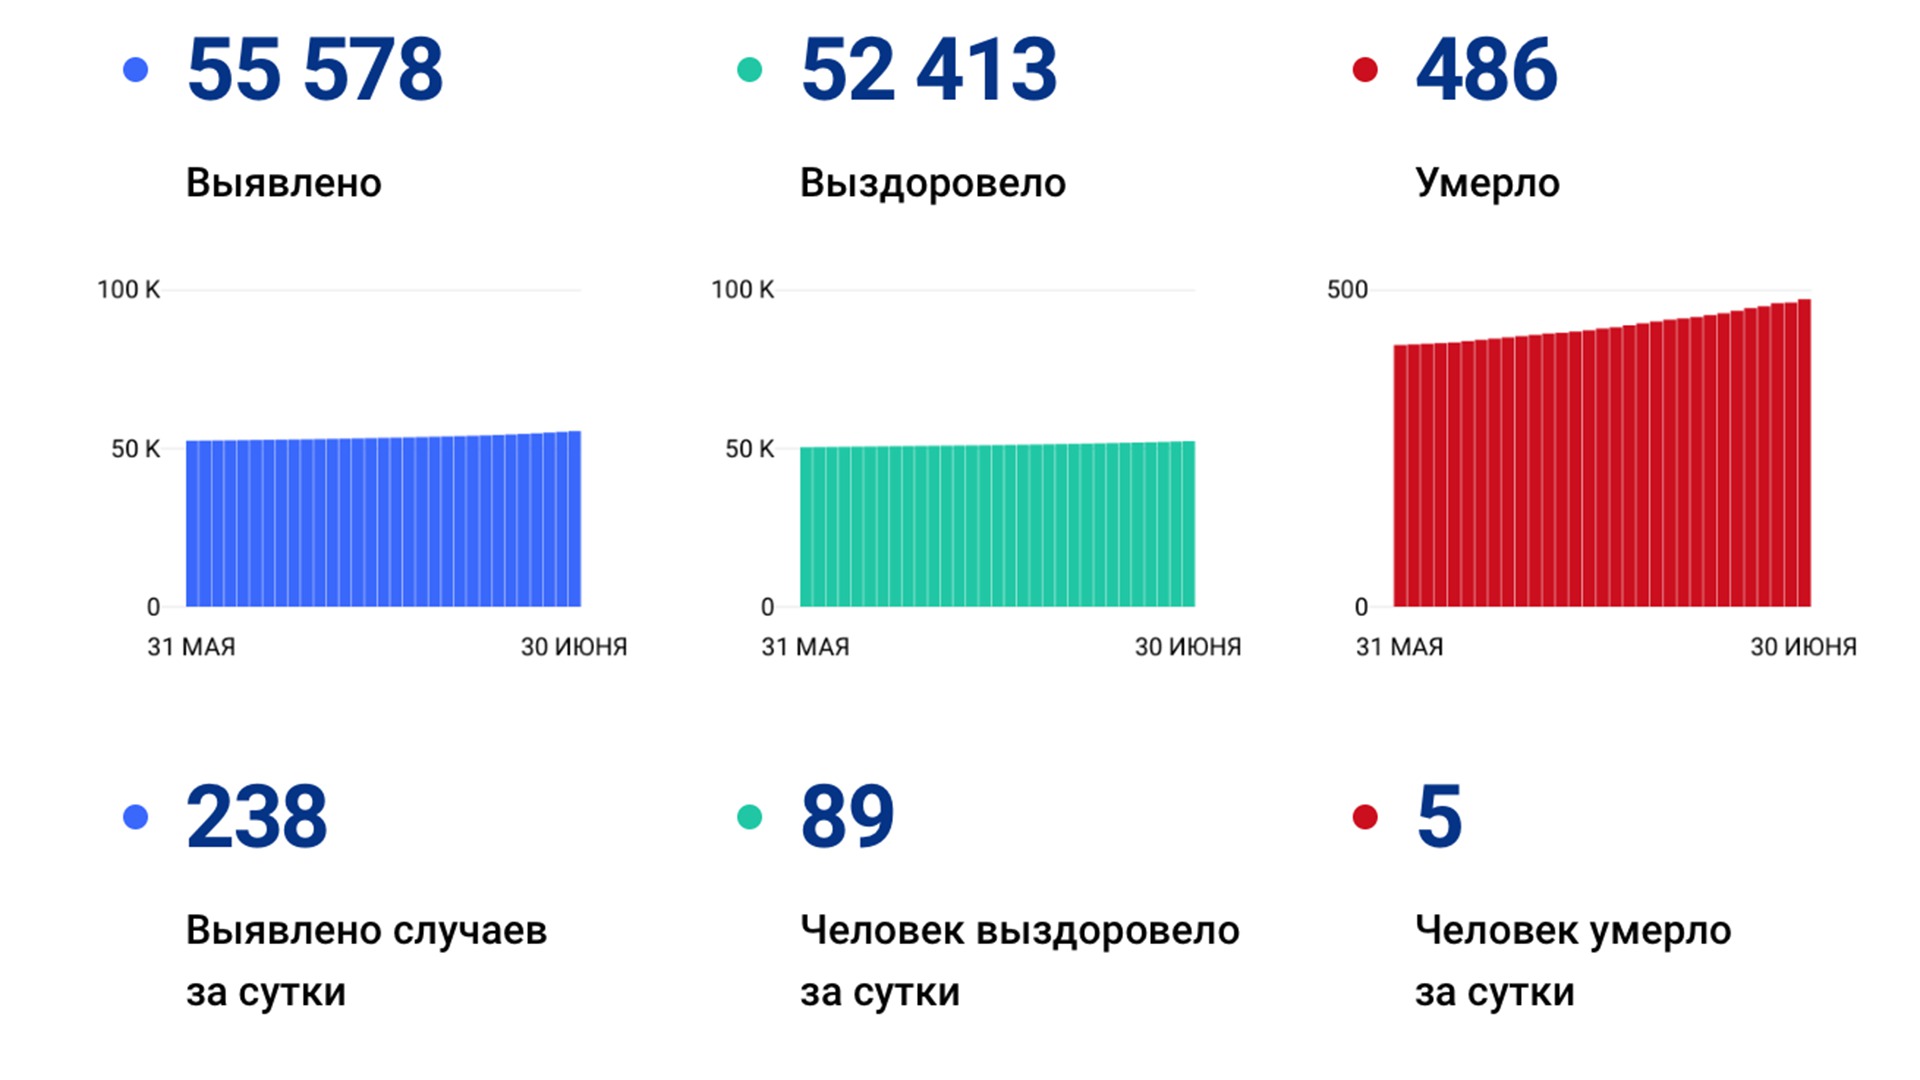 238 новых случаев коронавируса выявлено в Хабаровском крае за сутки